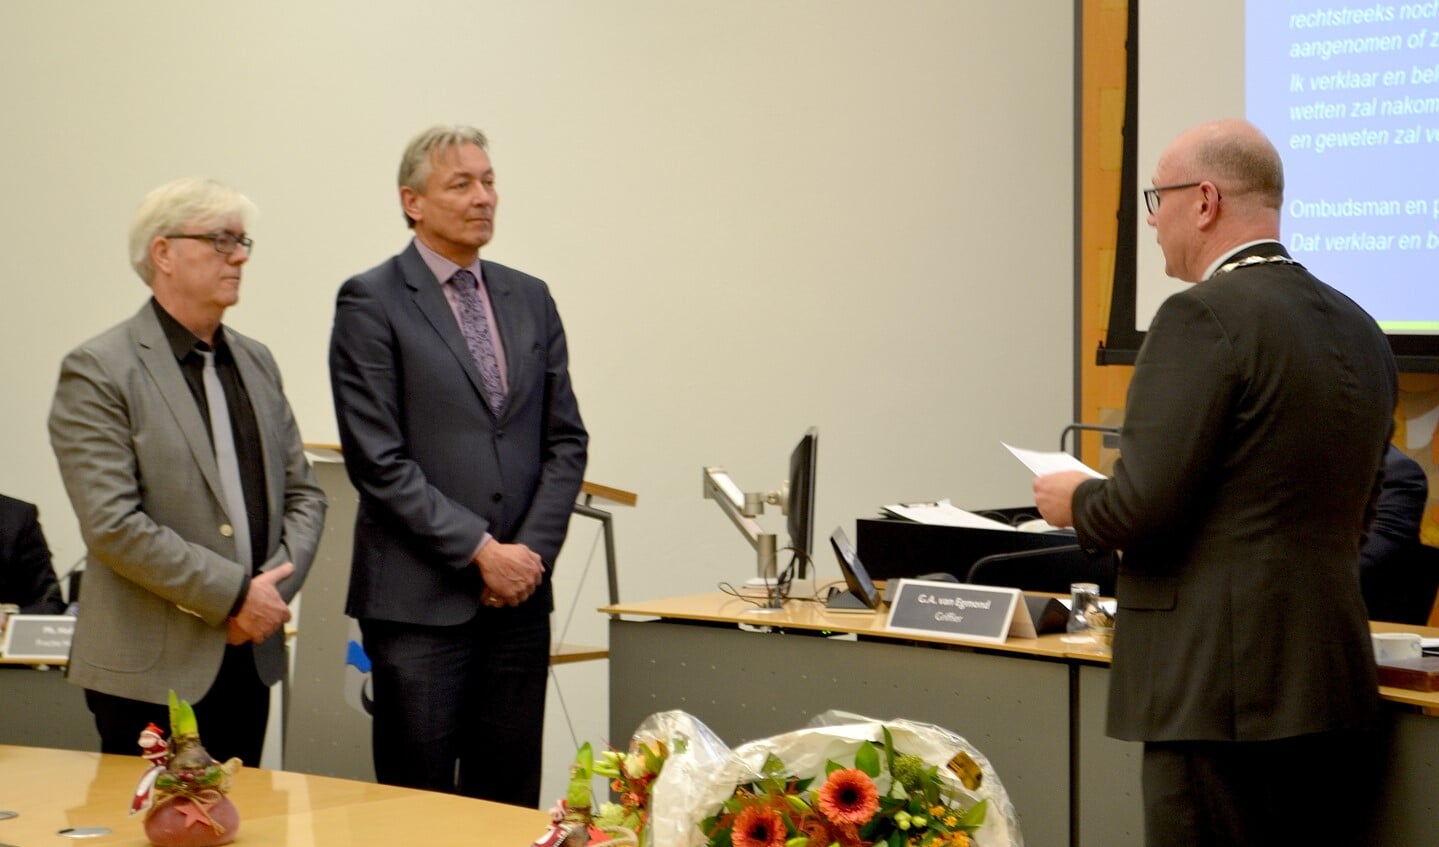 Peter Heskes en Bert van Alphen werden beëdigd als ombudsman in de gemeente Leidschendam-Voorburg (foto/tekst: Inge Koot).